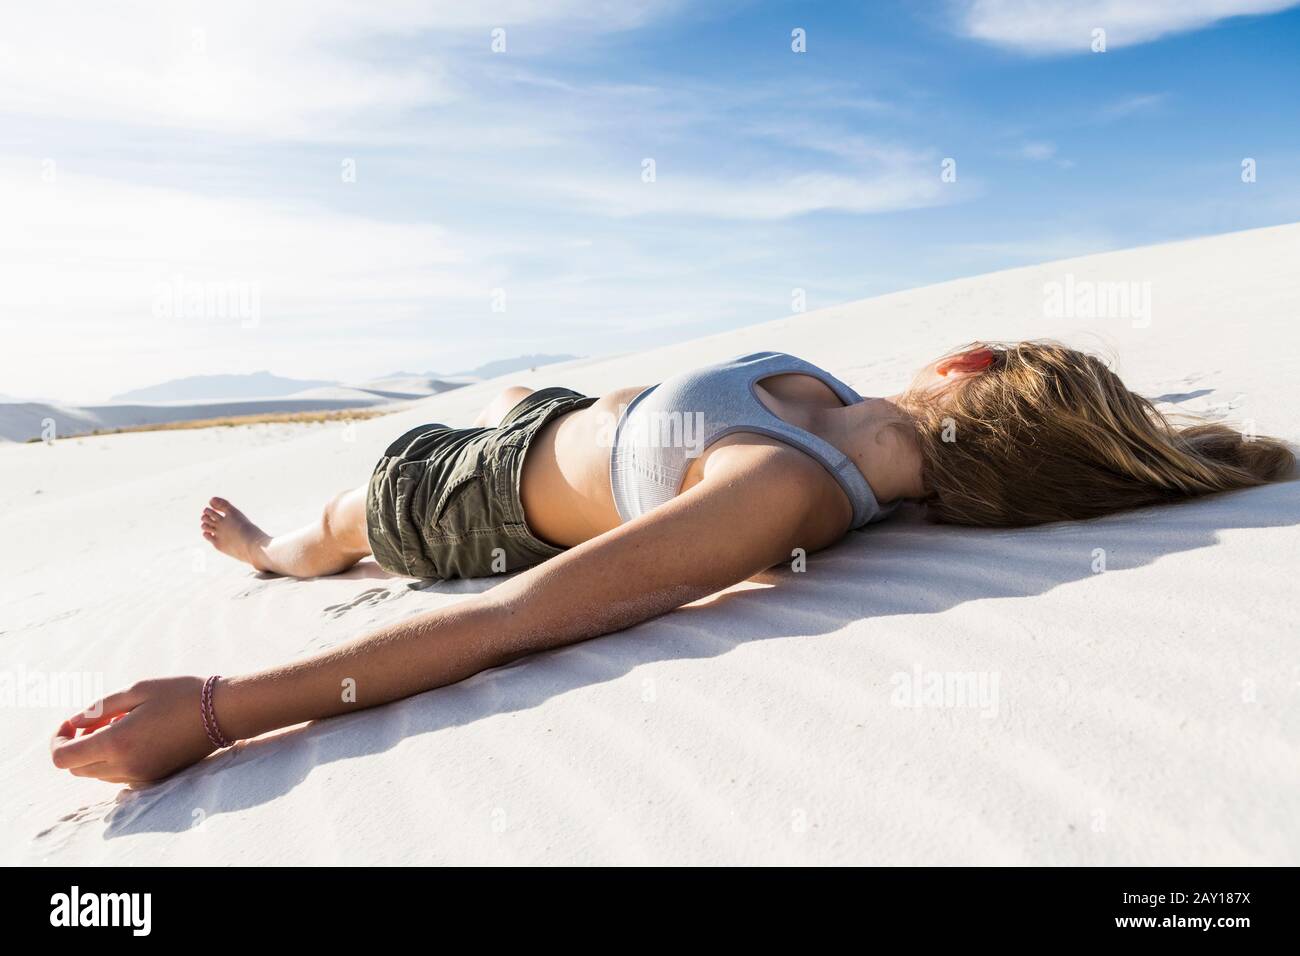 Une adolescente allongé sur son dos sur le sable blanc lisse White Sands NAT'l Monument, NM Banque D'Images